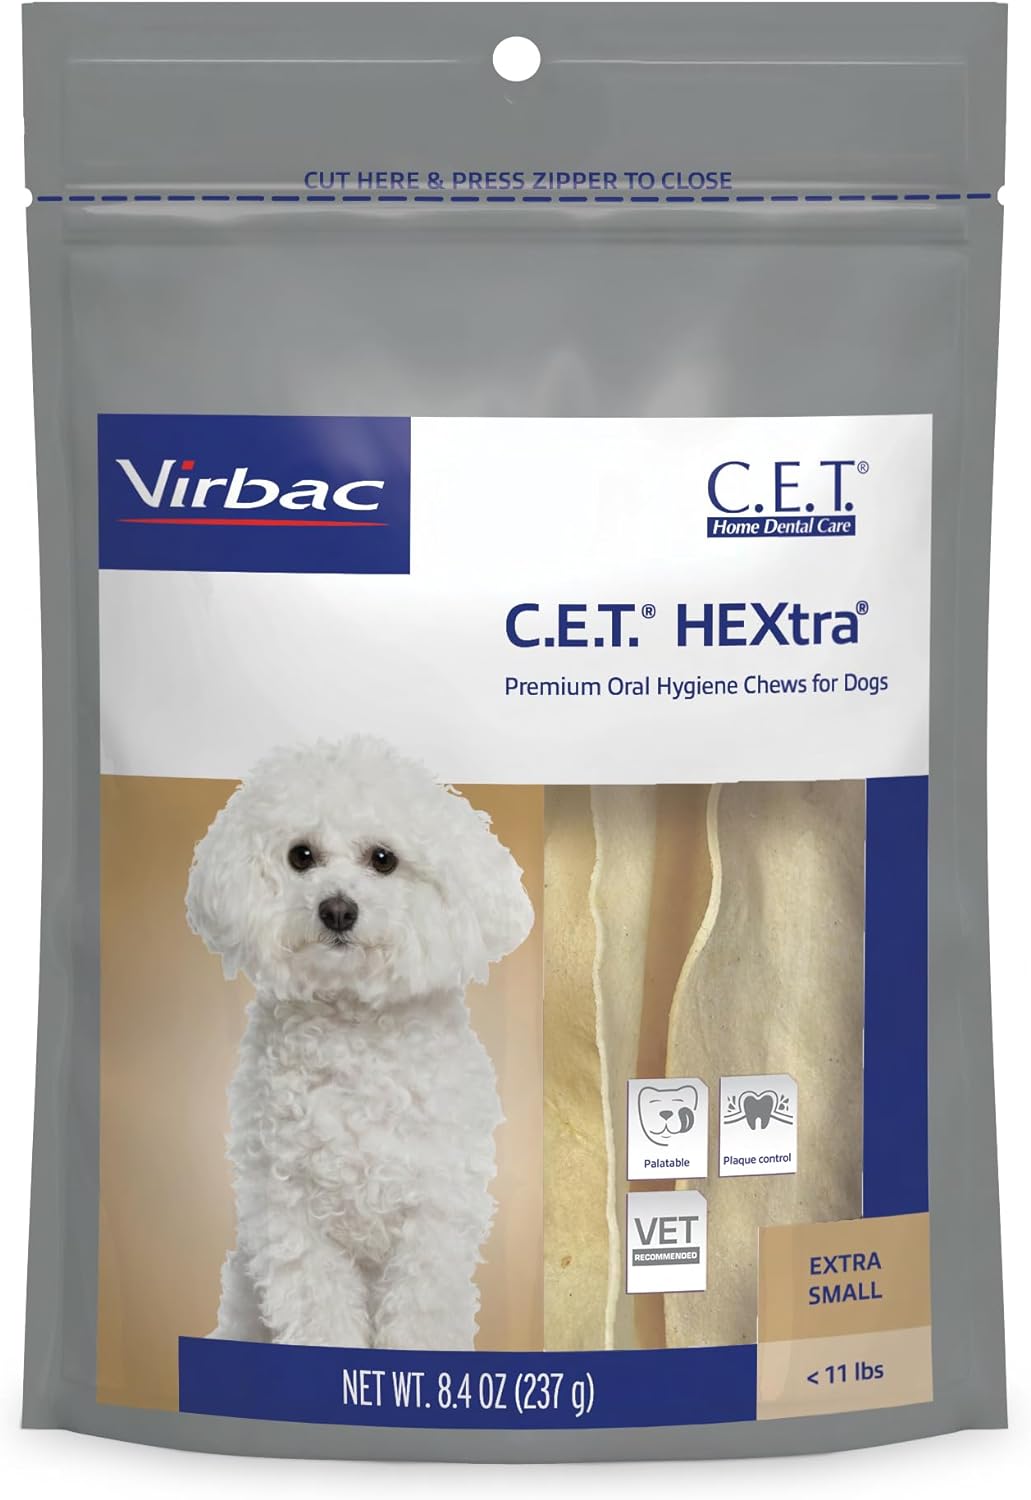 Virbac C.E.T.® HEXtra® Premium Oral Hygiene Chews For Dogs